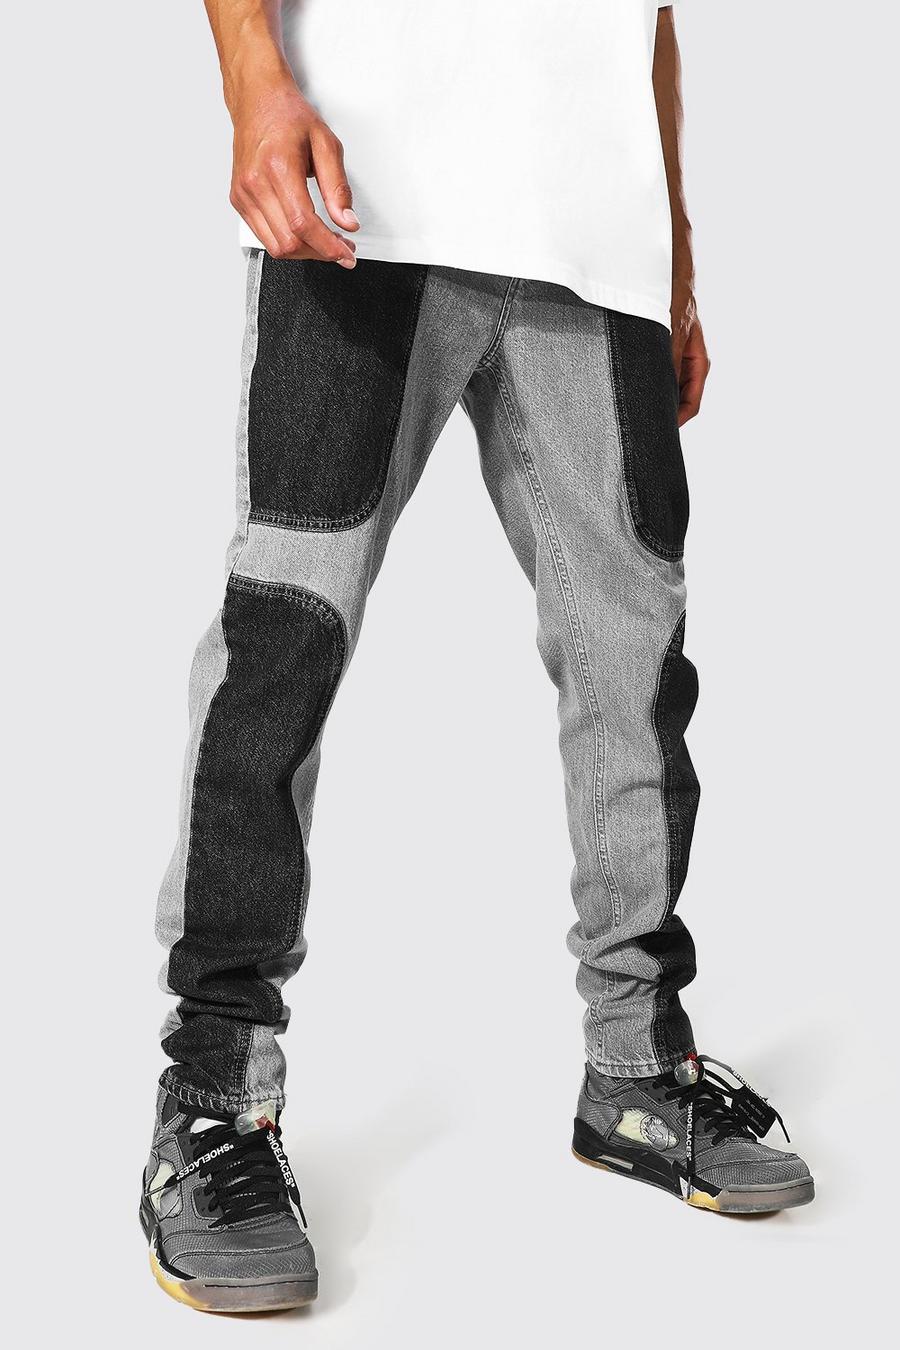 אפור ביניים ג'ינס בגזרה צרה עם פאנלים בצבעים מנוגדים לגברים גבוהים image number 1